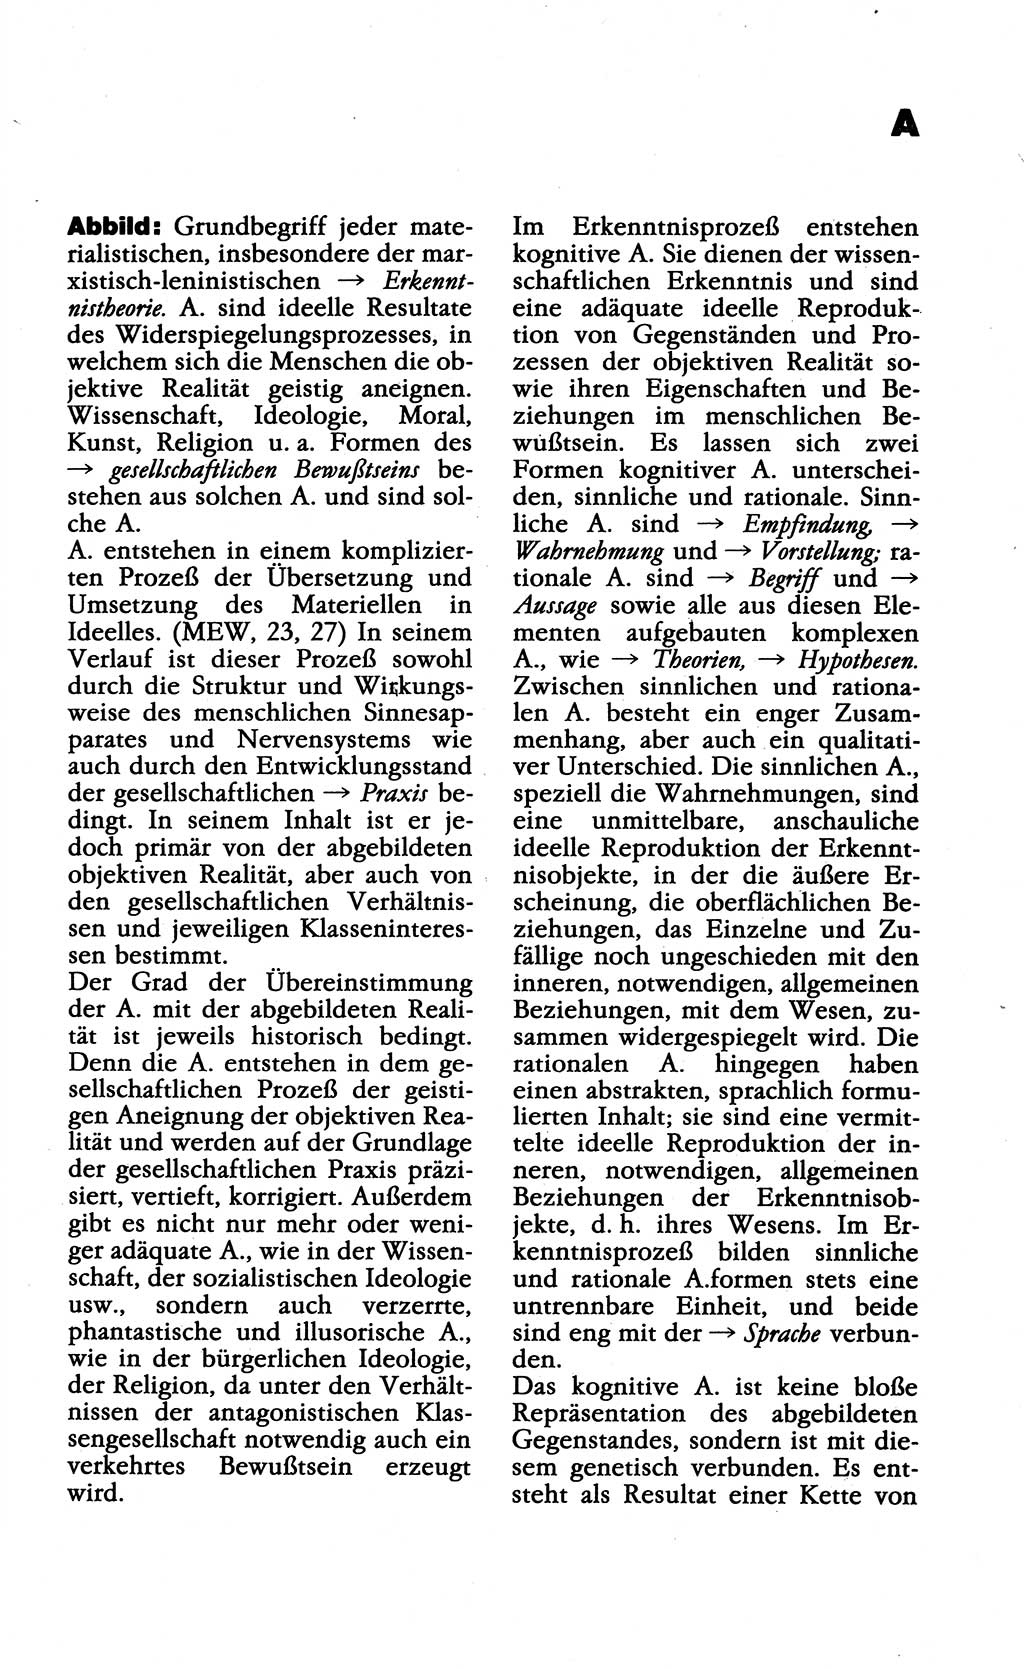 Wörterbuch der marxistisch-leninistischen Philosophie [Deutsche Demokratische Republik (DDR)] 1985, Seite 11 (Wb. ML Phil. DDR 1985, S. 11)